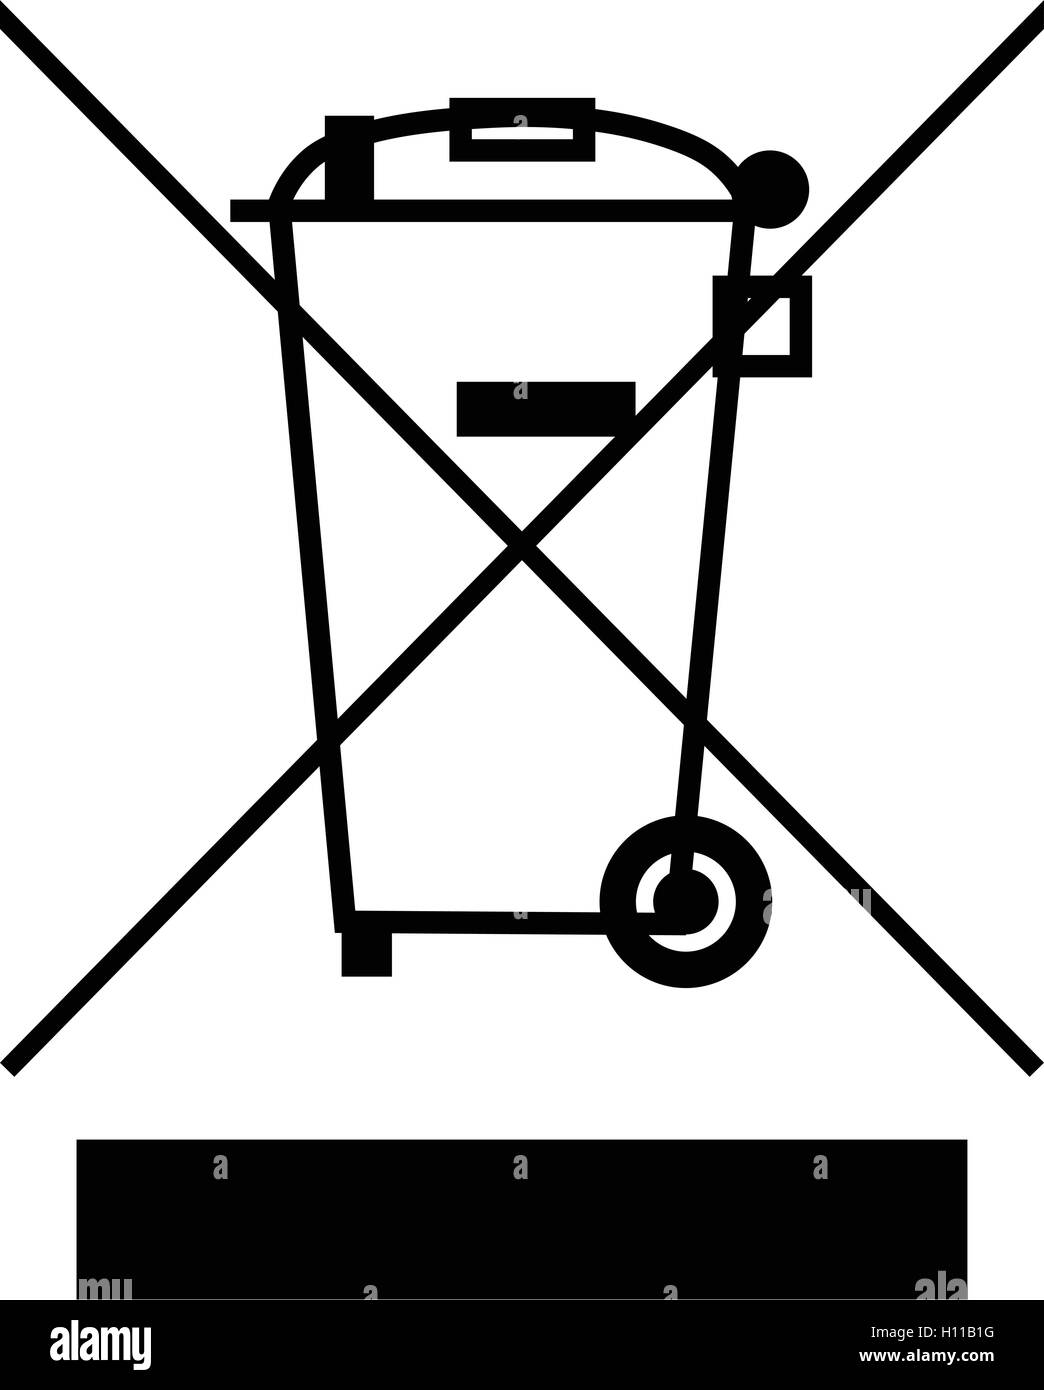 Le représentant une poubelle barrée avec symbole de barre, déchets  d'équipements électriques et électroniques d'illustration vectorielle,  signe de recyclage Image Vectorielle Stock - Alamy